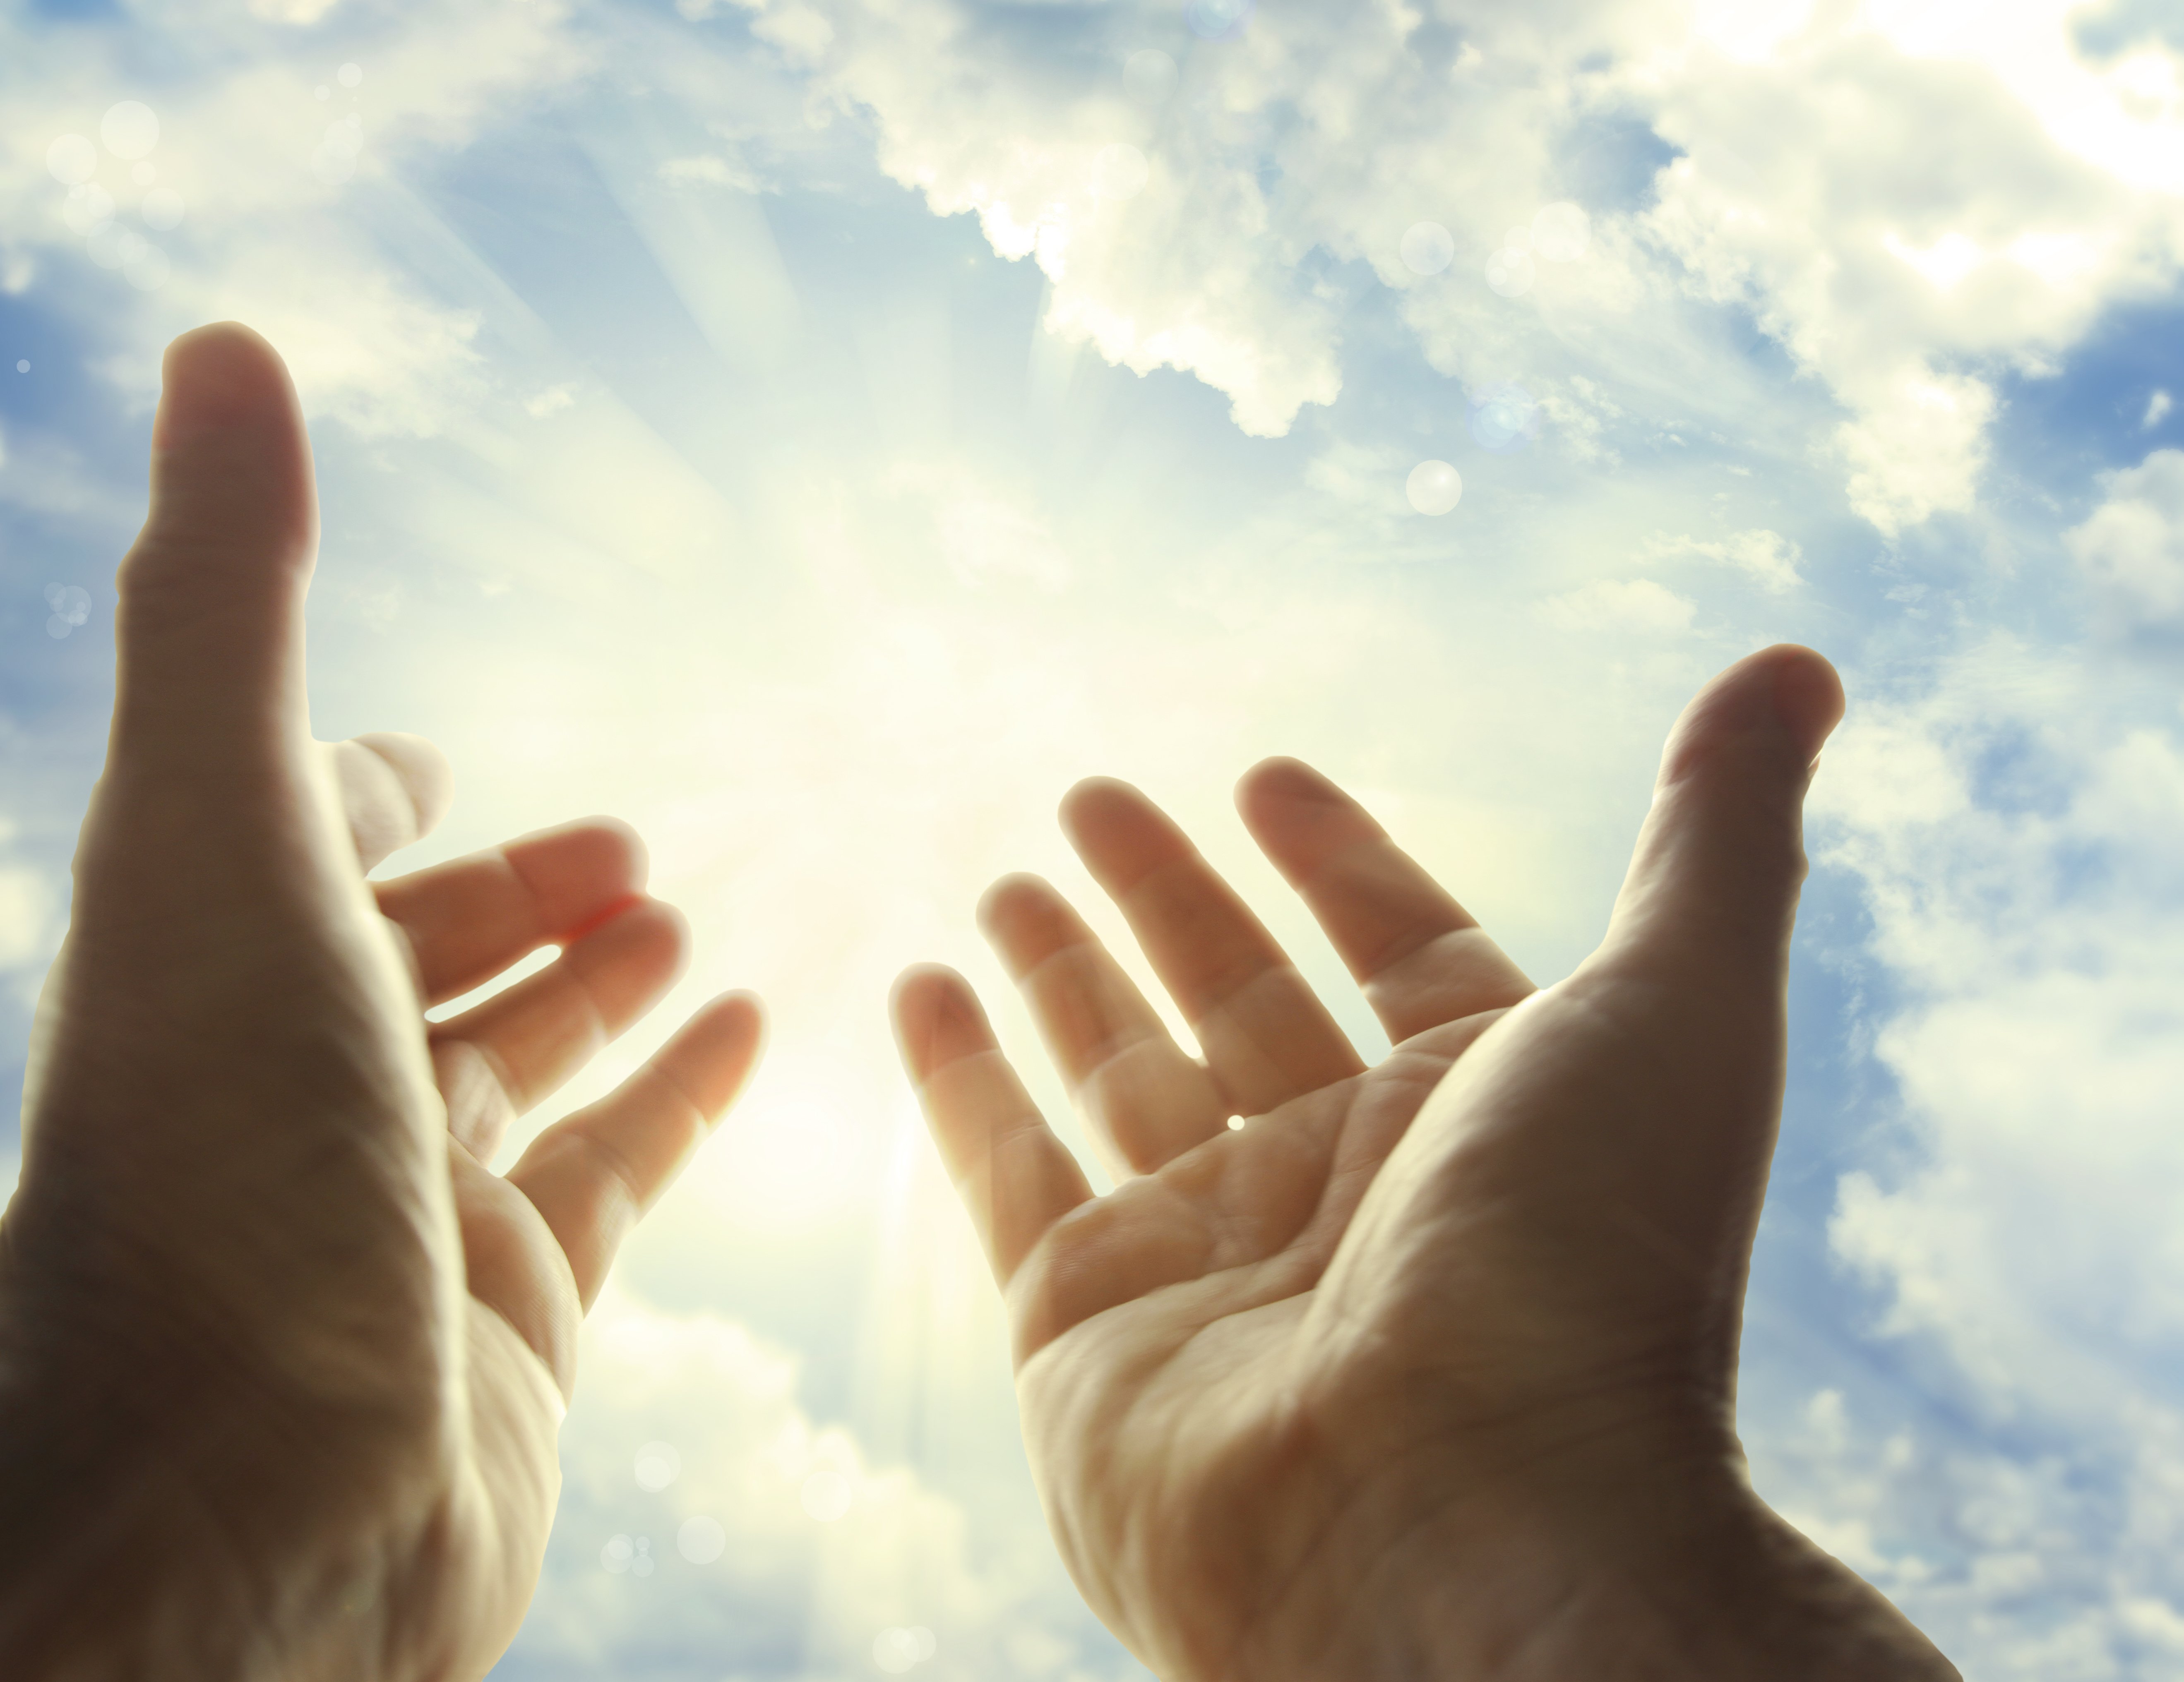 Человек надеющийся на лучшее. Руки протянутые к небу. Рука тянется к небу. Рука Бога. Молитва руки к небу.